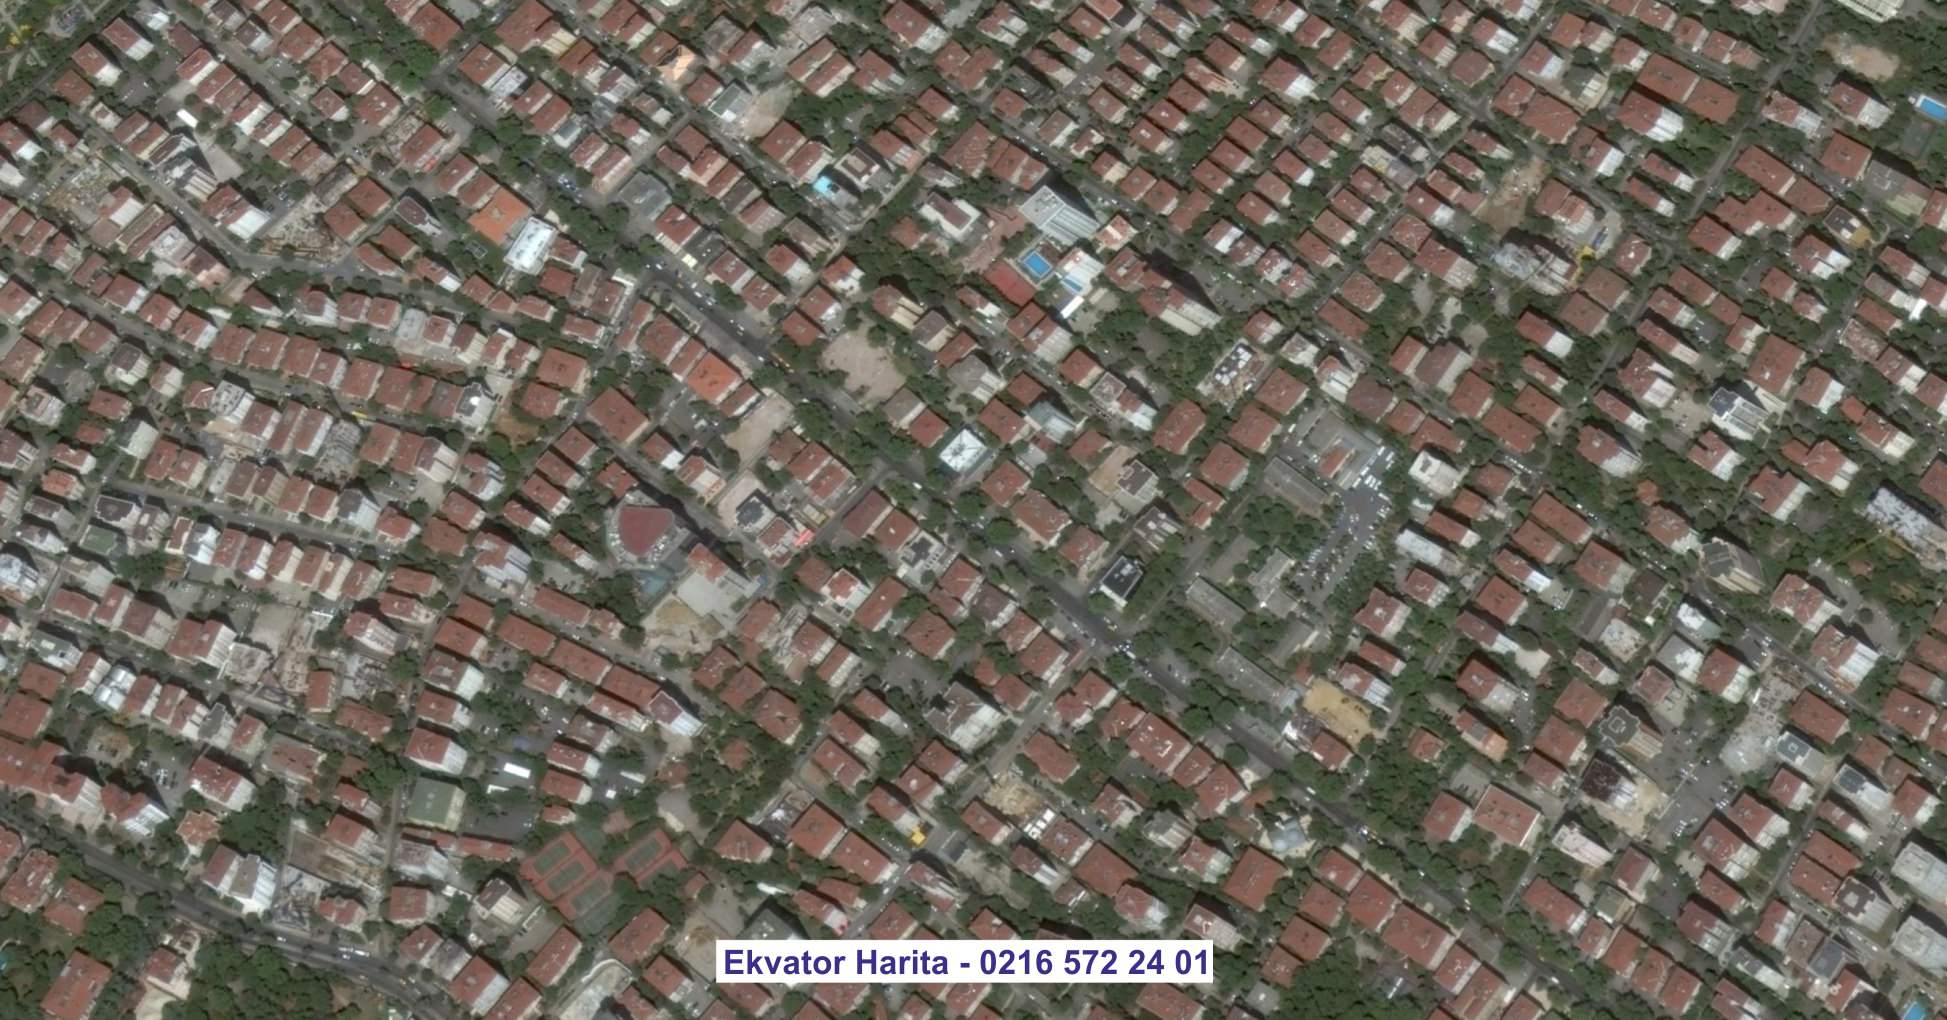 Kırklareli Uydu Görüntüsü Örnek Fotoğrafı